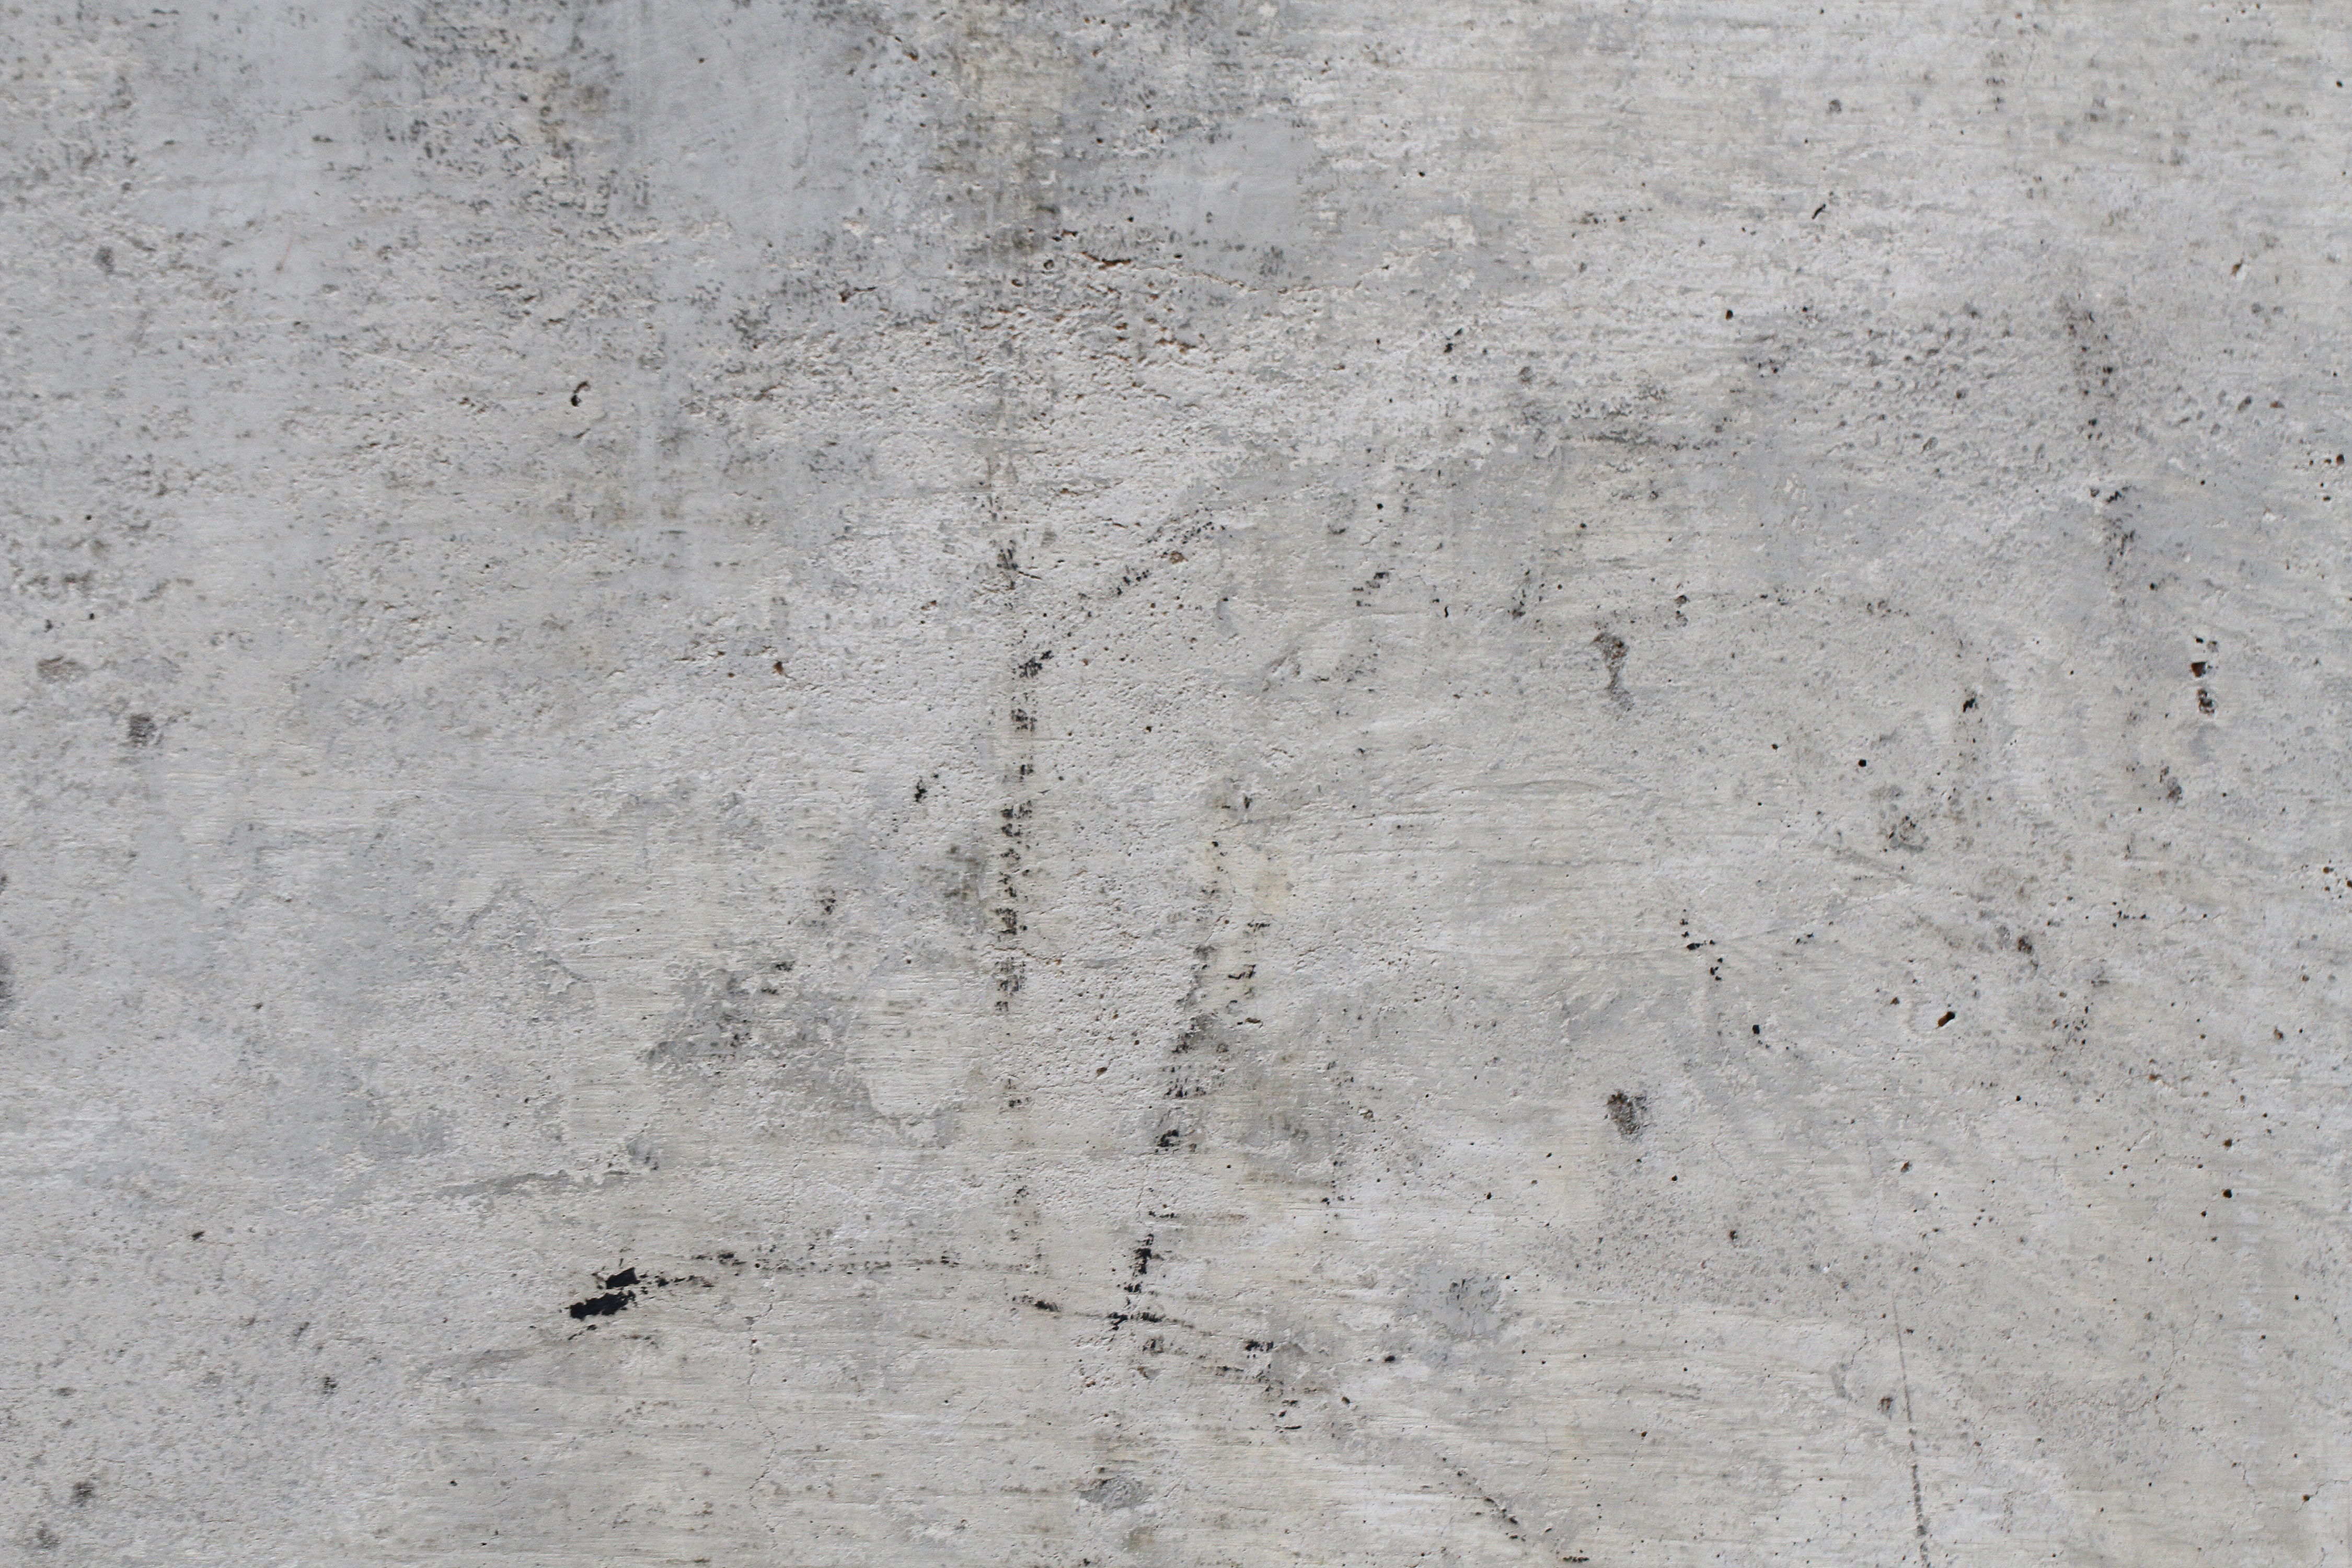 Subtle concrete texture photo